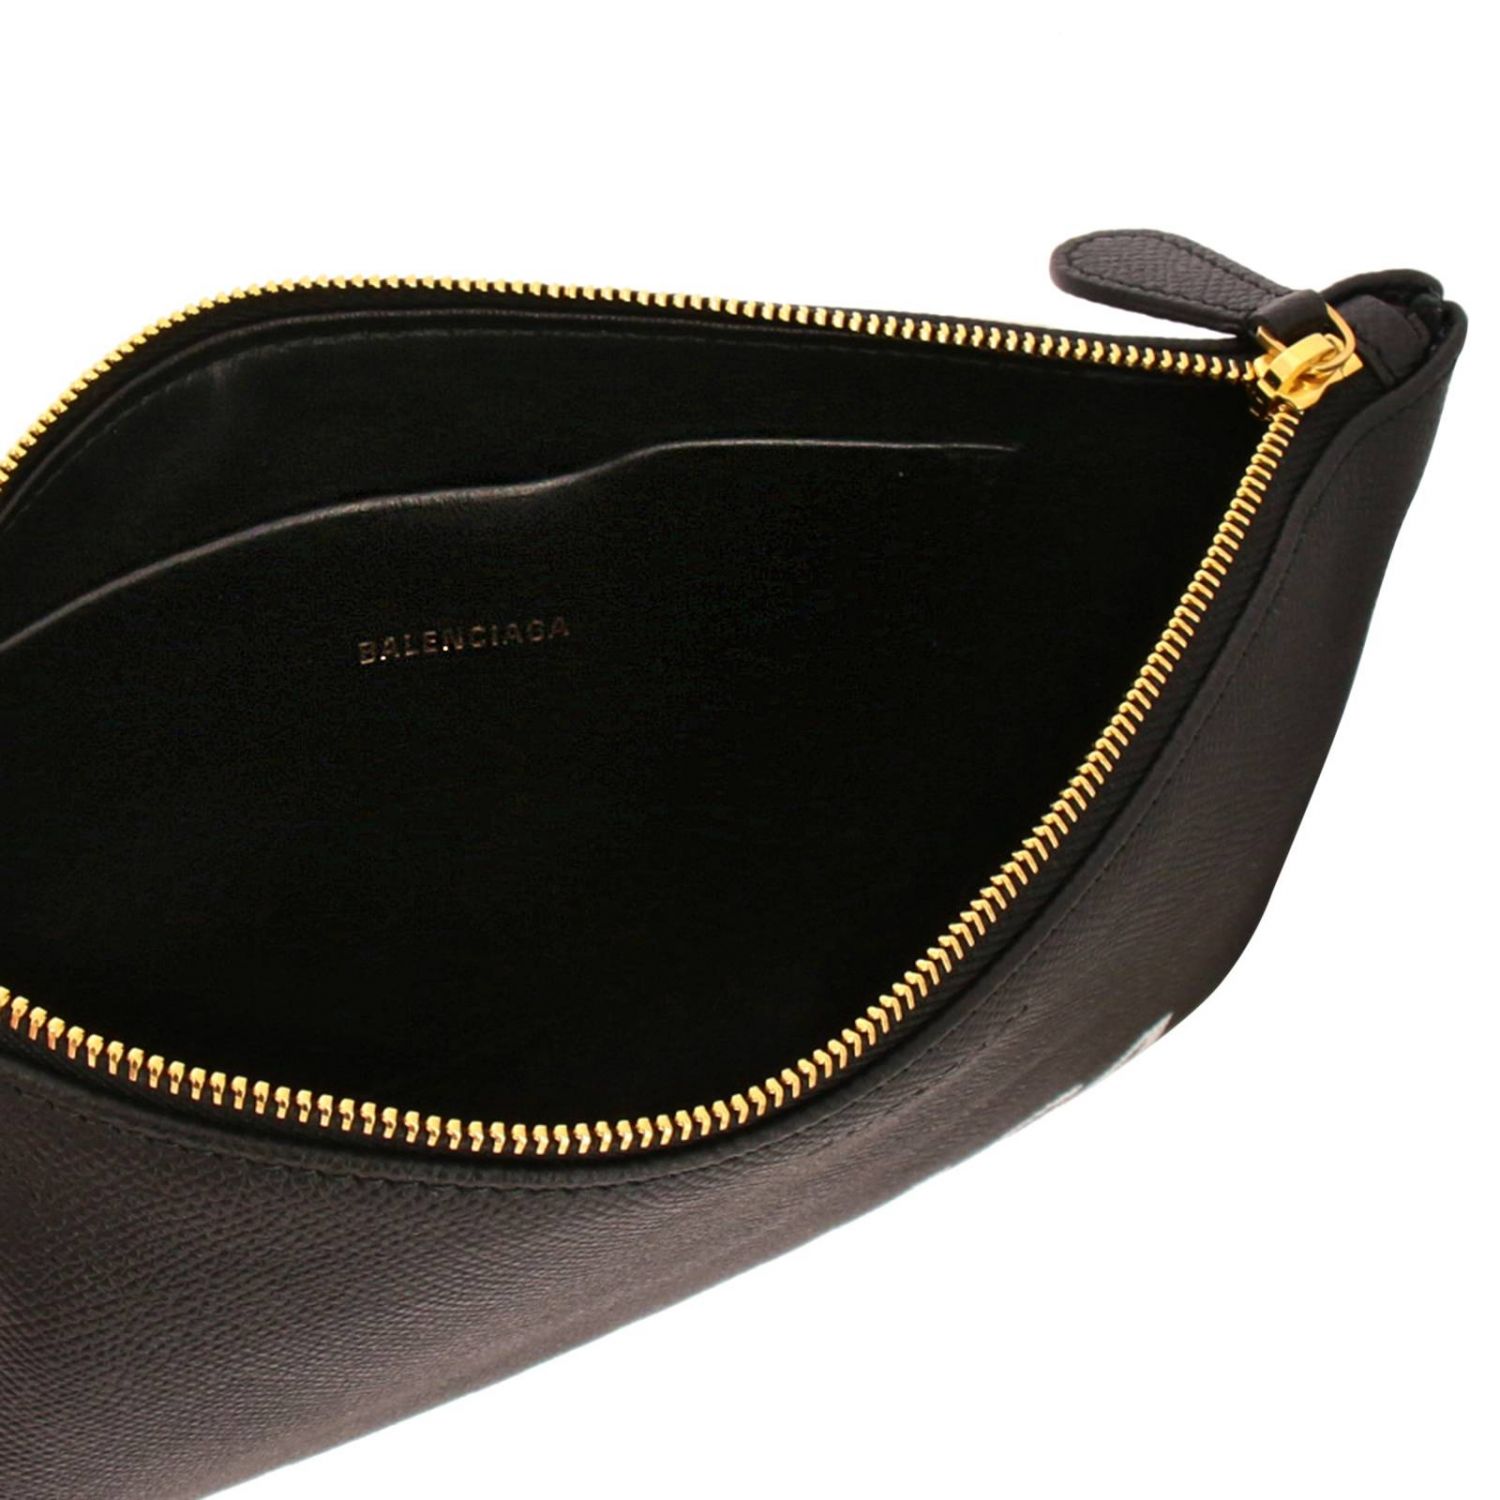 Balenciaga Outlet: Shoulder bag women | Clutch Balenciaga Women Black ...